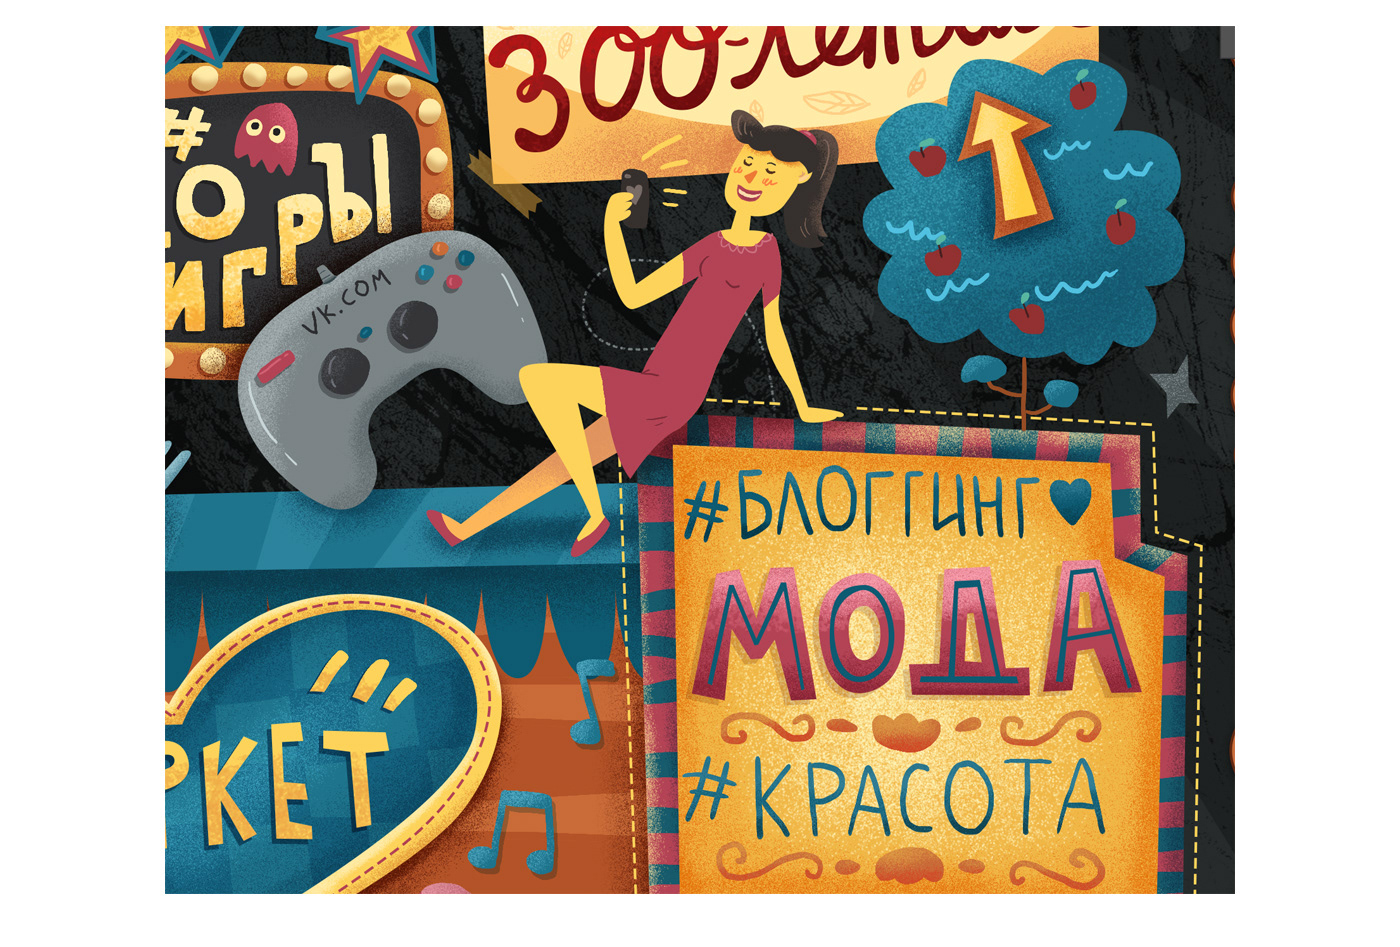 vk.com vkontakte poster fest HAND LETTERING type music festivals